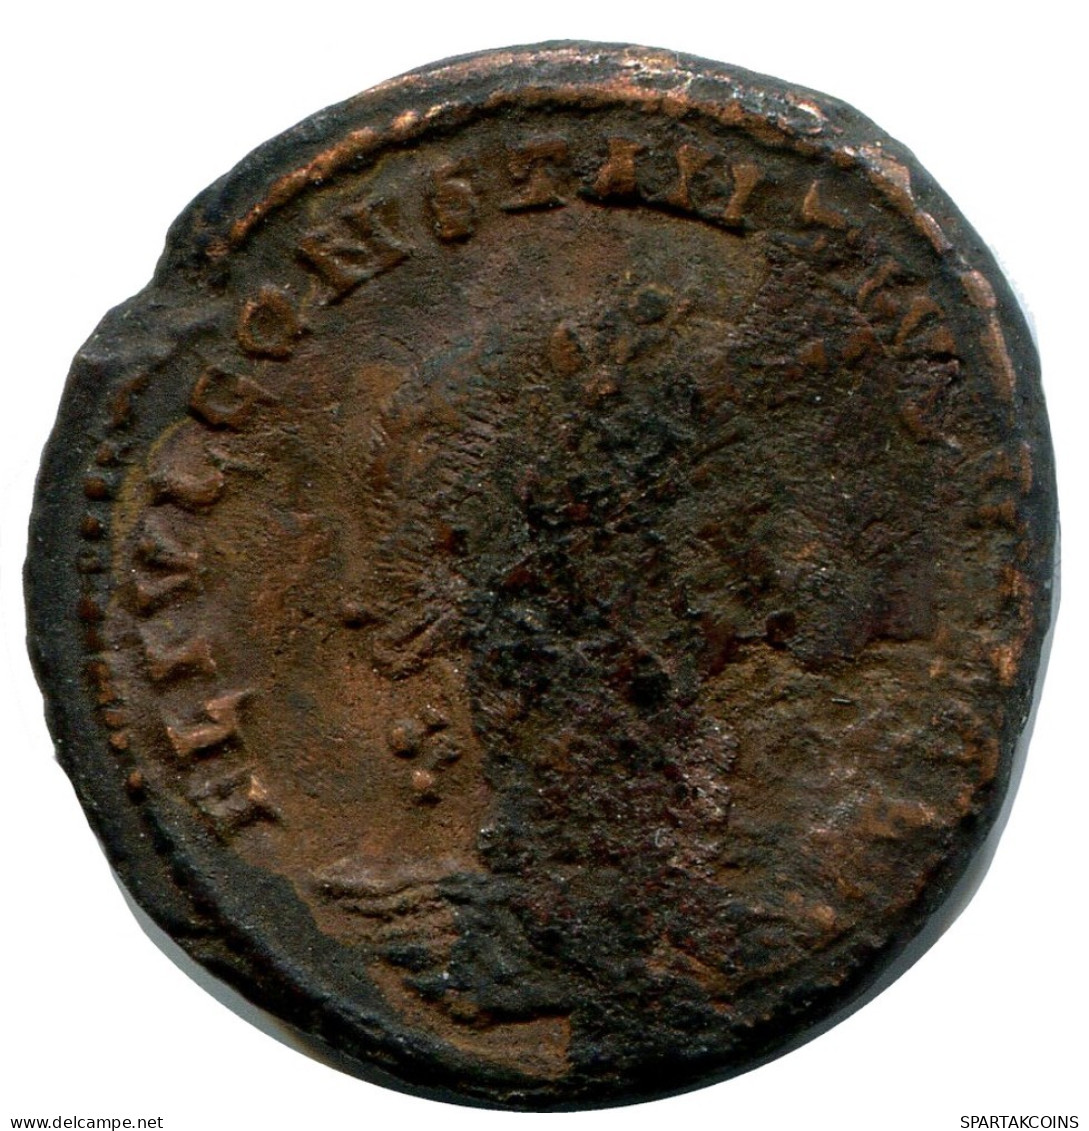 CONSTANTIUS II MINTED IN ALEKSANDRIA FOUND IN IHNASYAH HOARD #ANC10199.14.U.A - L'Empire Chrétien (307 à 363)